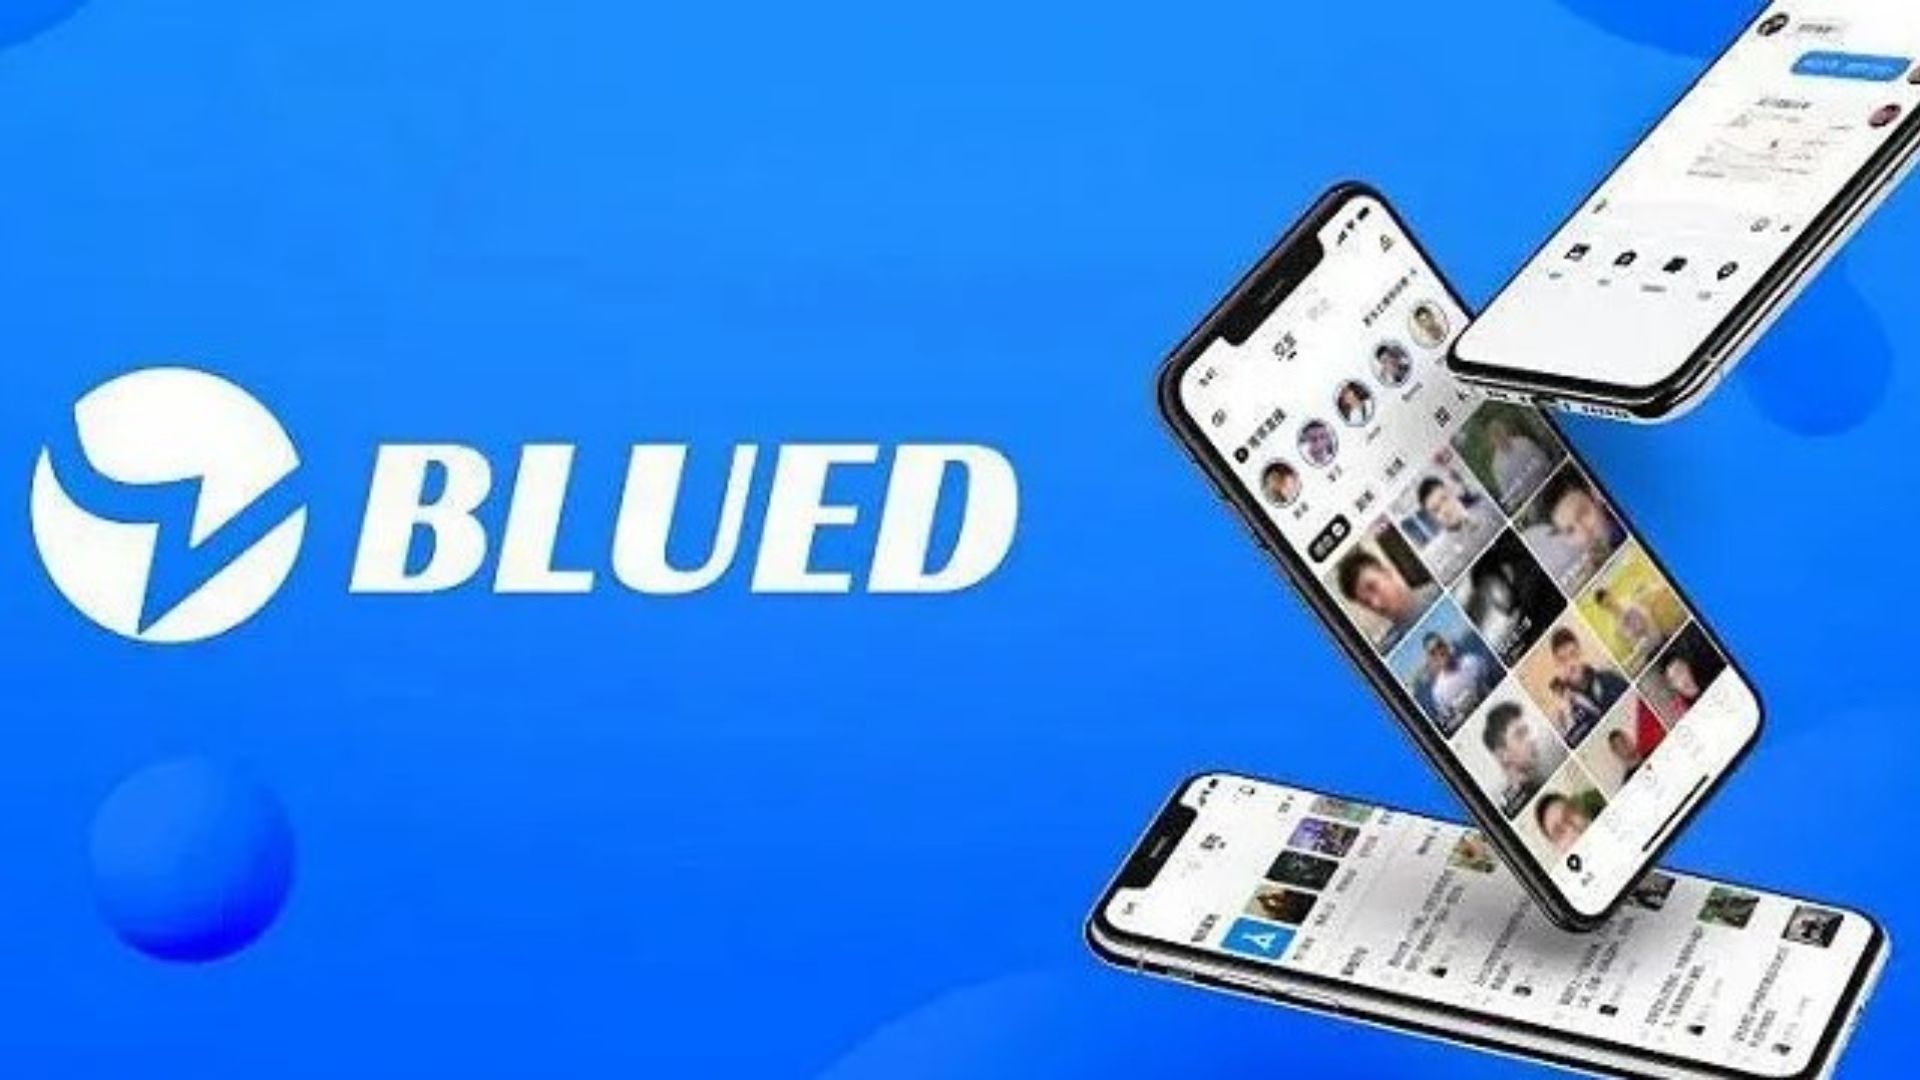 Aplikasi Blued Sedang Viral ? Simak Penjelasannya Berikut ini